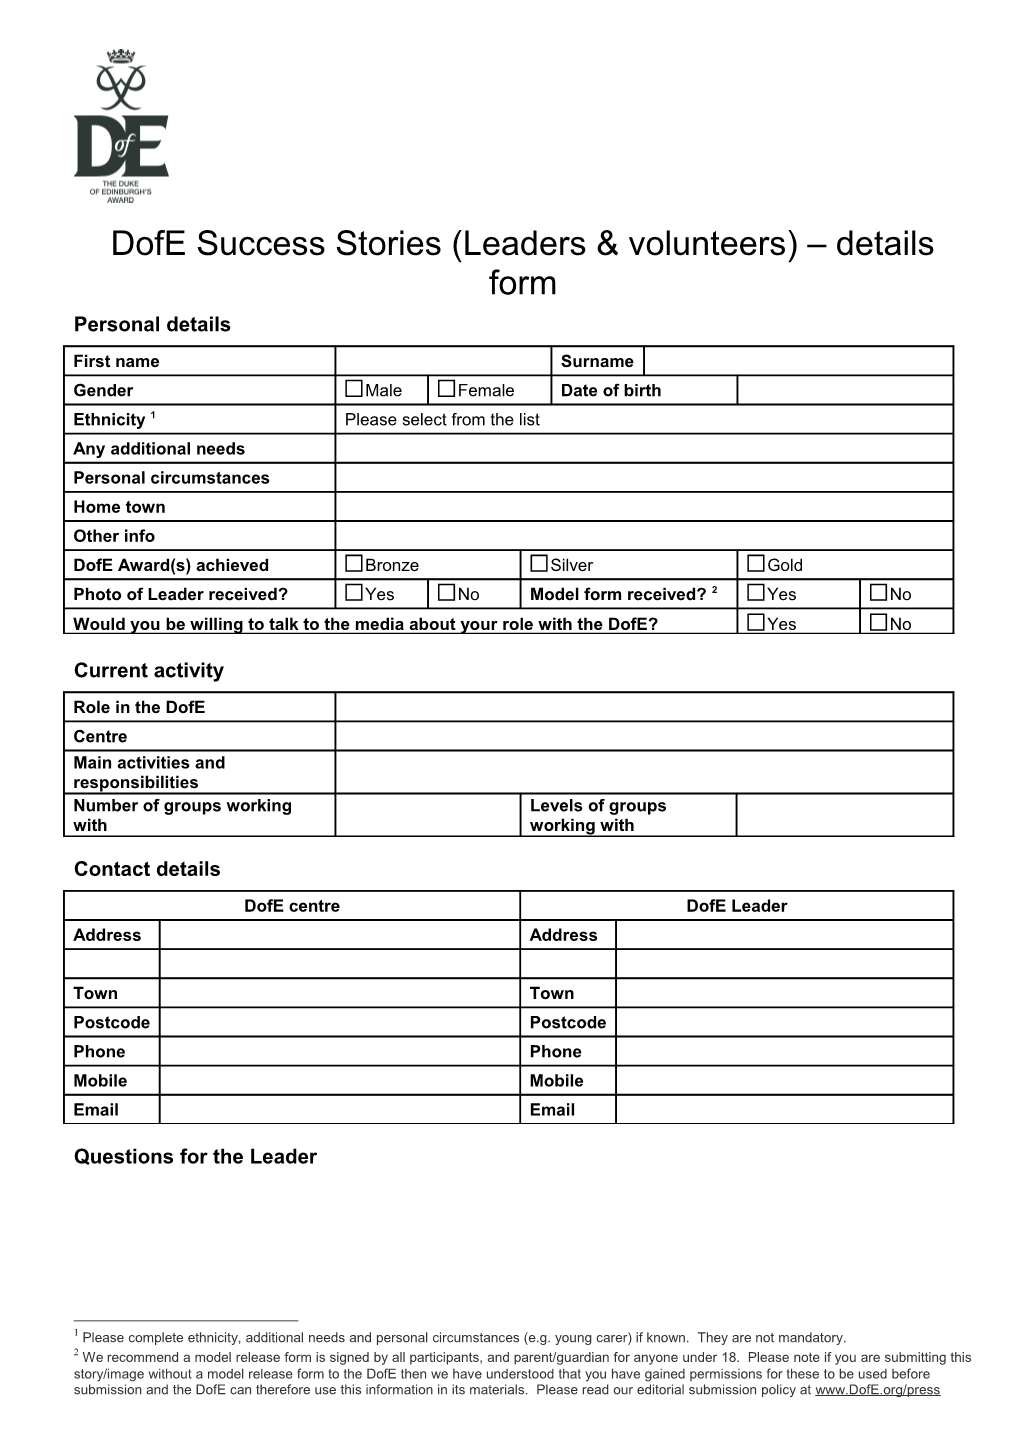 Dofe Success Stories (Leaders & Volunteers) Details Form